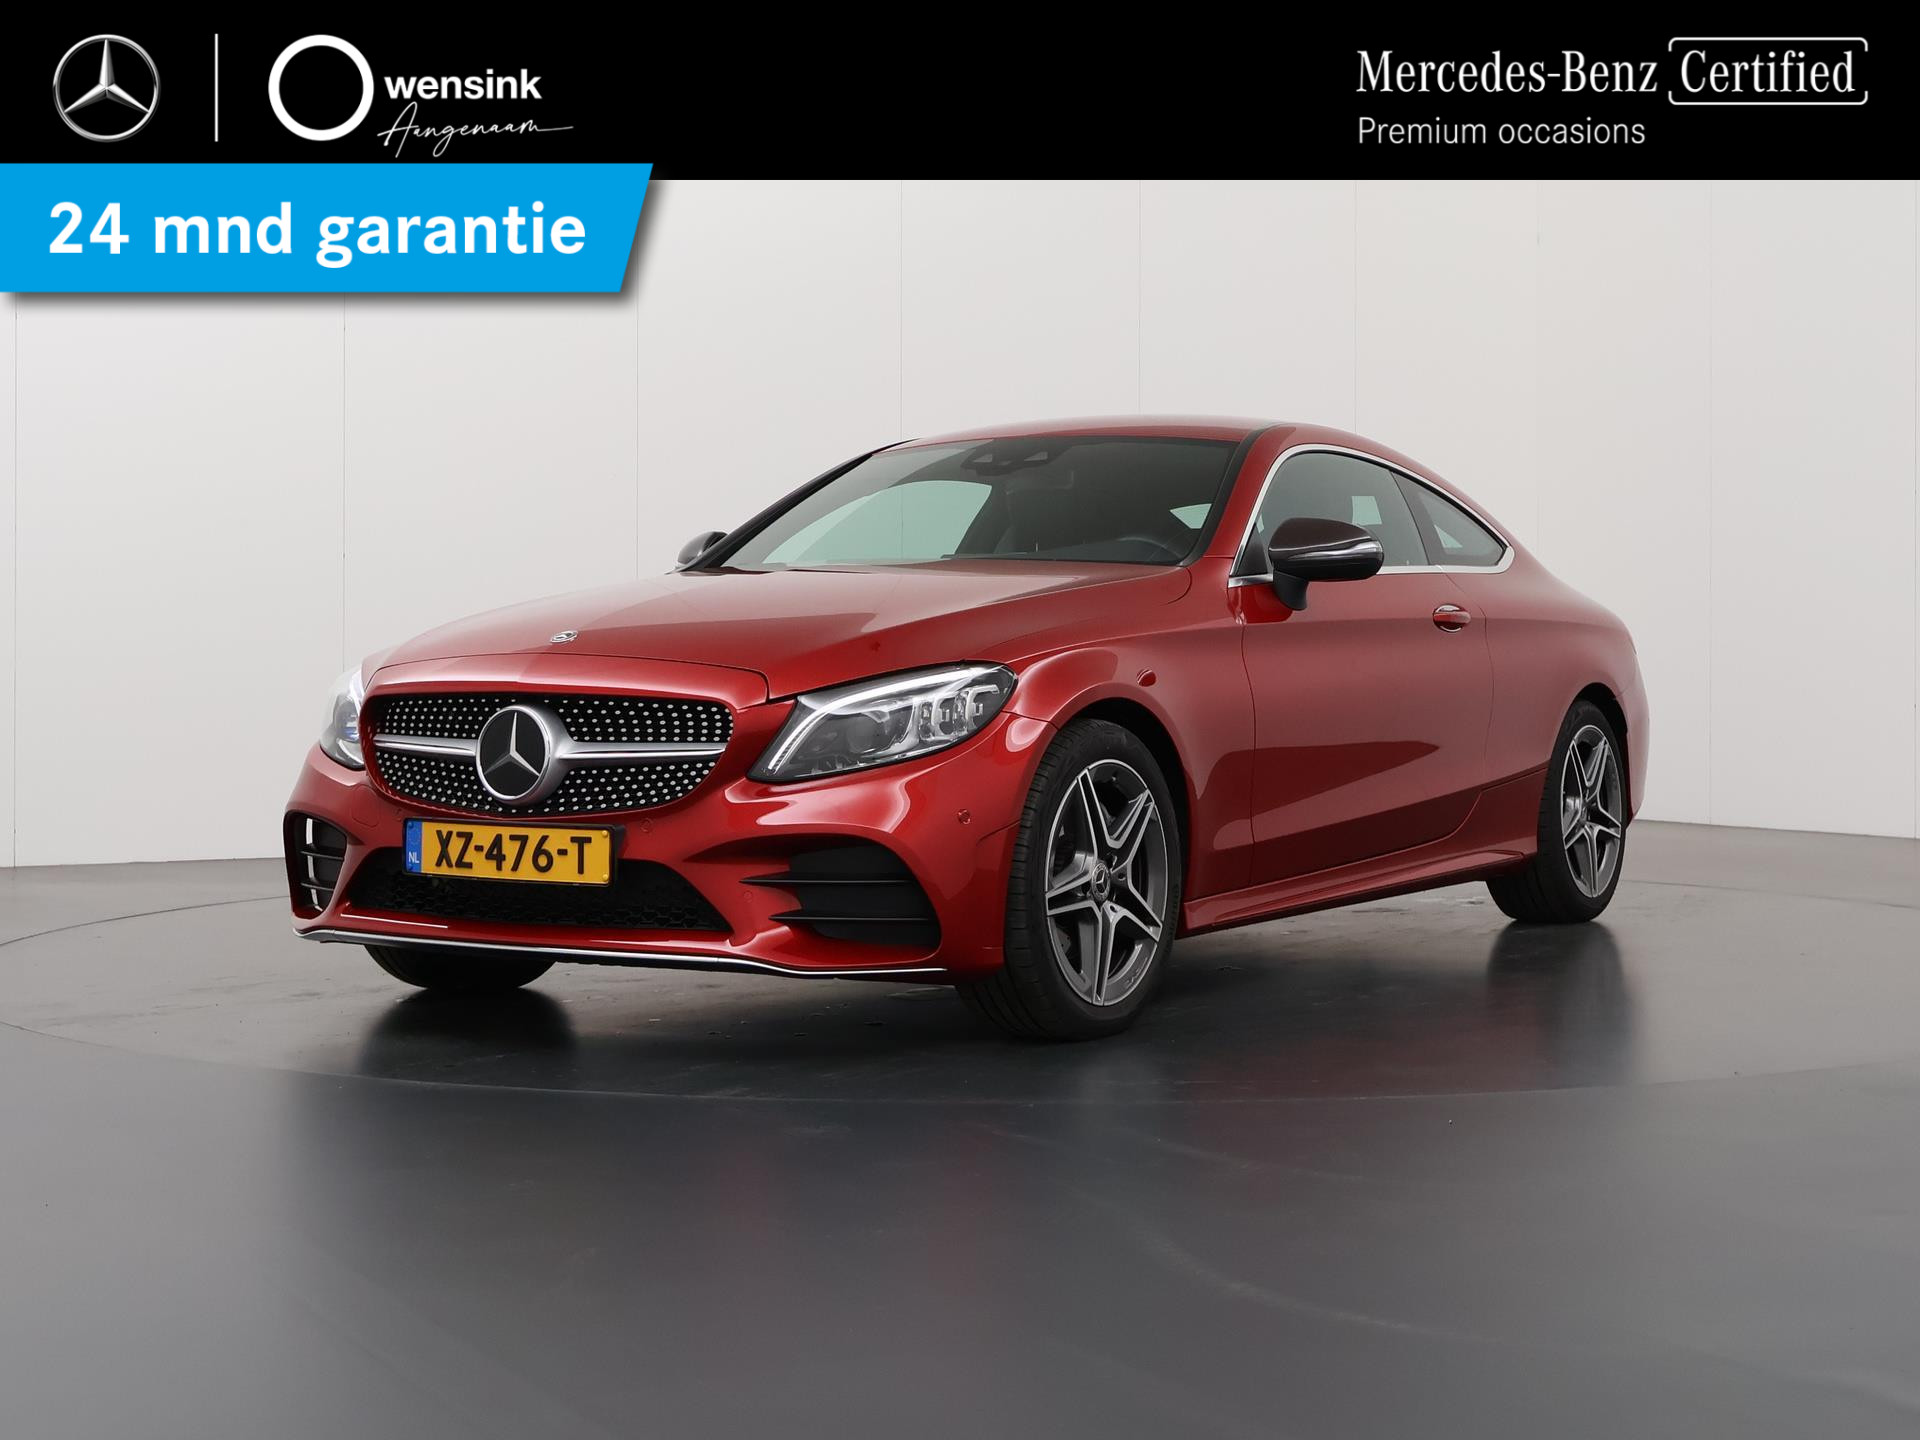 Mercedes-Benz C-klasse Coupé 200 Advantage AMG | Rij-assistentiepakket | Achteruitrijcamera | Digitaal dashboard | Led-koplampen | Comand navigatie | bij viaBOVAG.nl